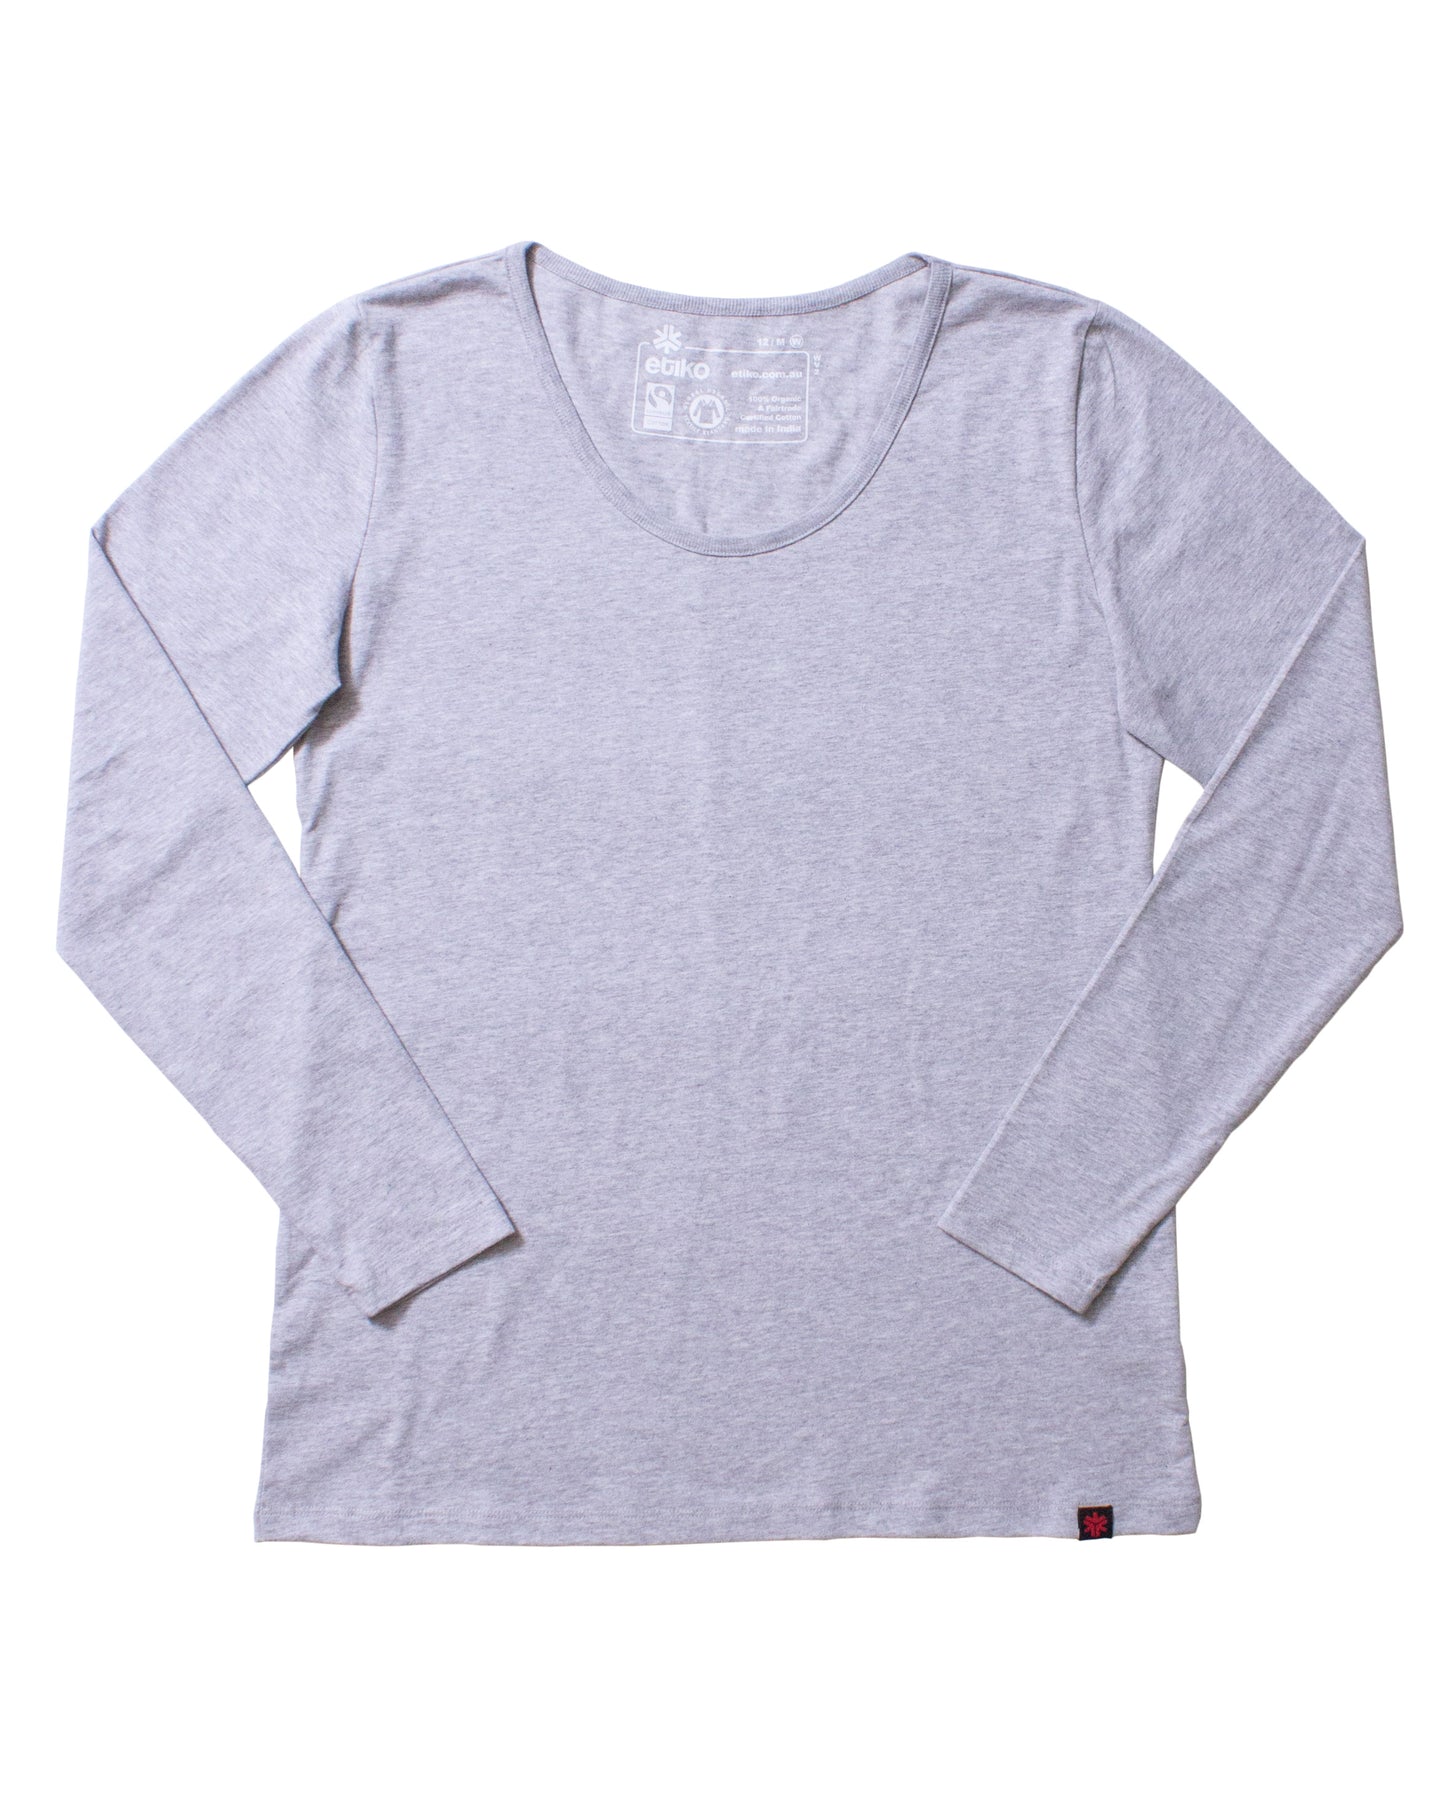 Etiko Fairtrade Certified Organic Cotton Grey Marle Long Sleeve Women’s T-Shirt, Eco-Friendly